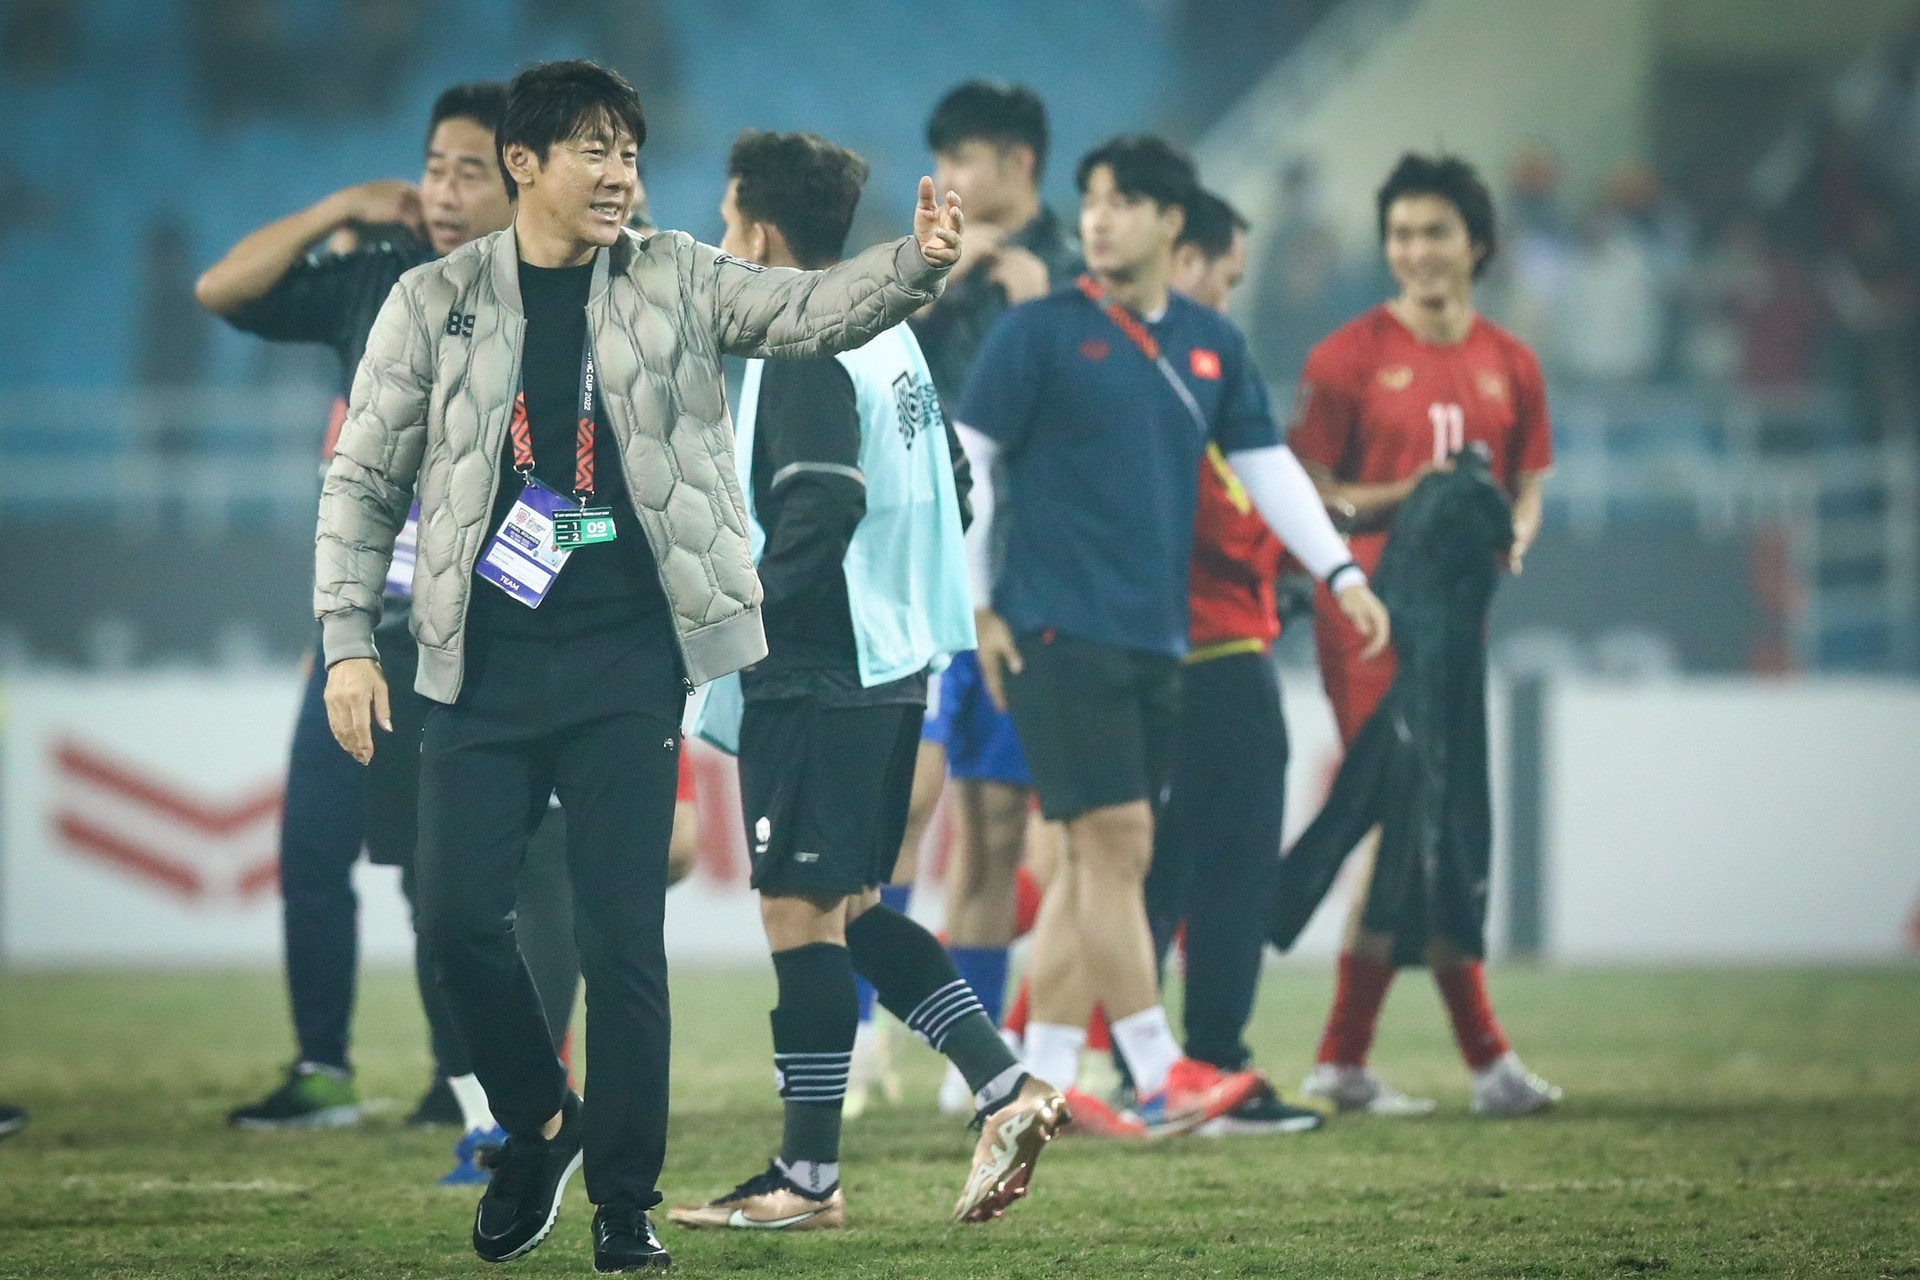 Tiết lộ về tương lai của HLV Shin Tae Yong sau trận thua tuyển Việt Nam - 2